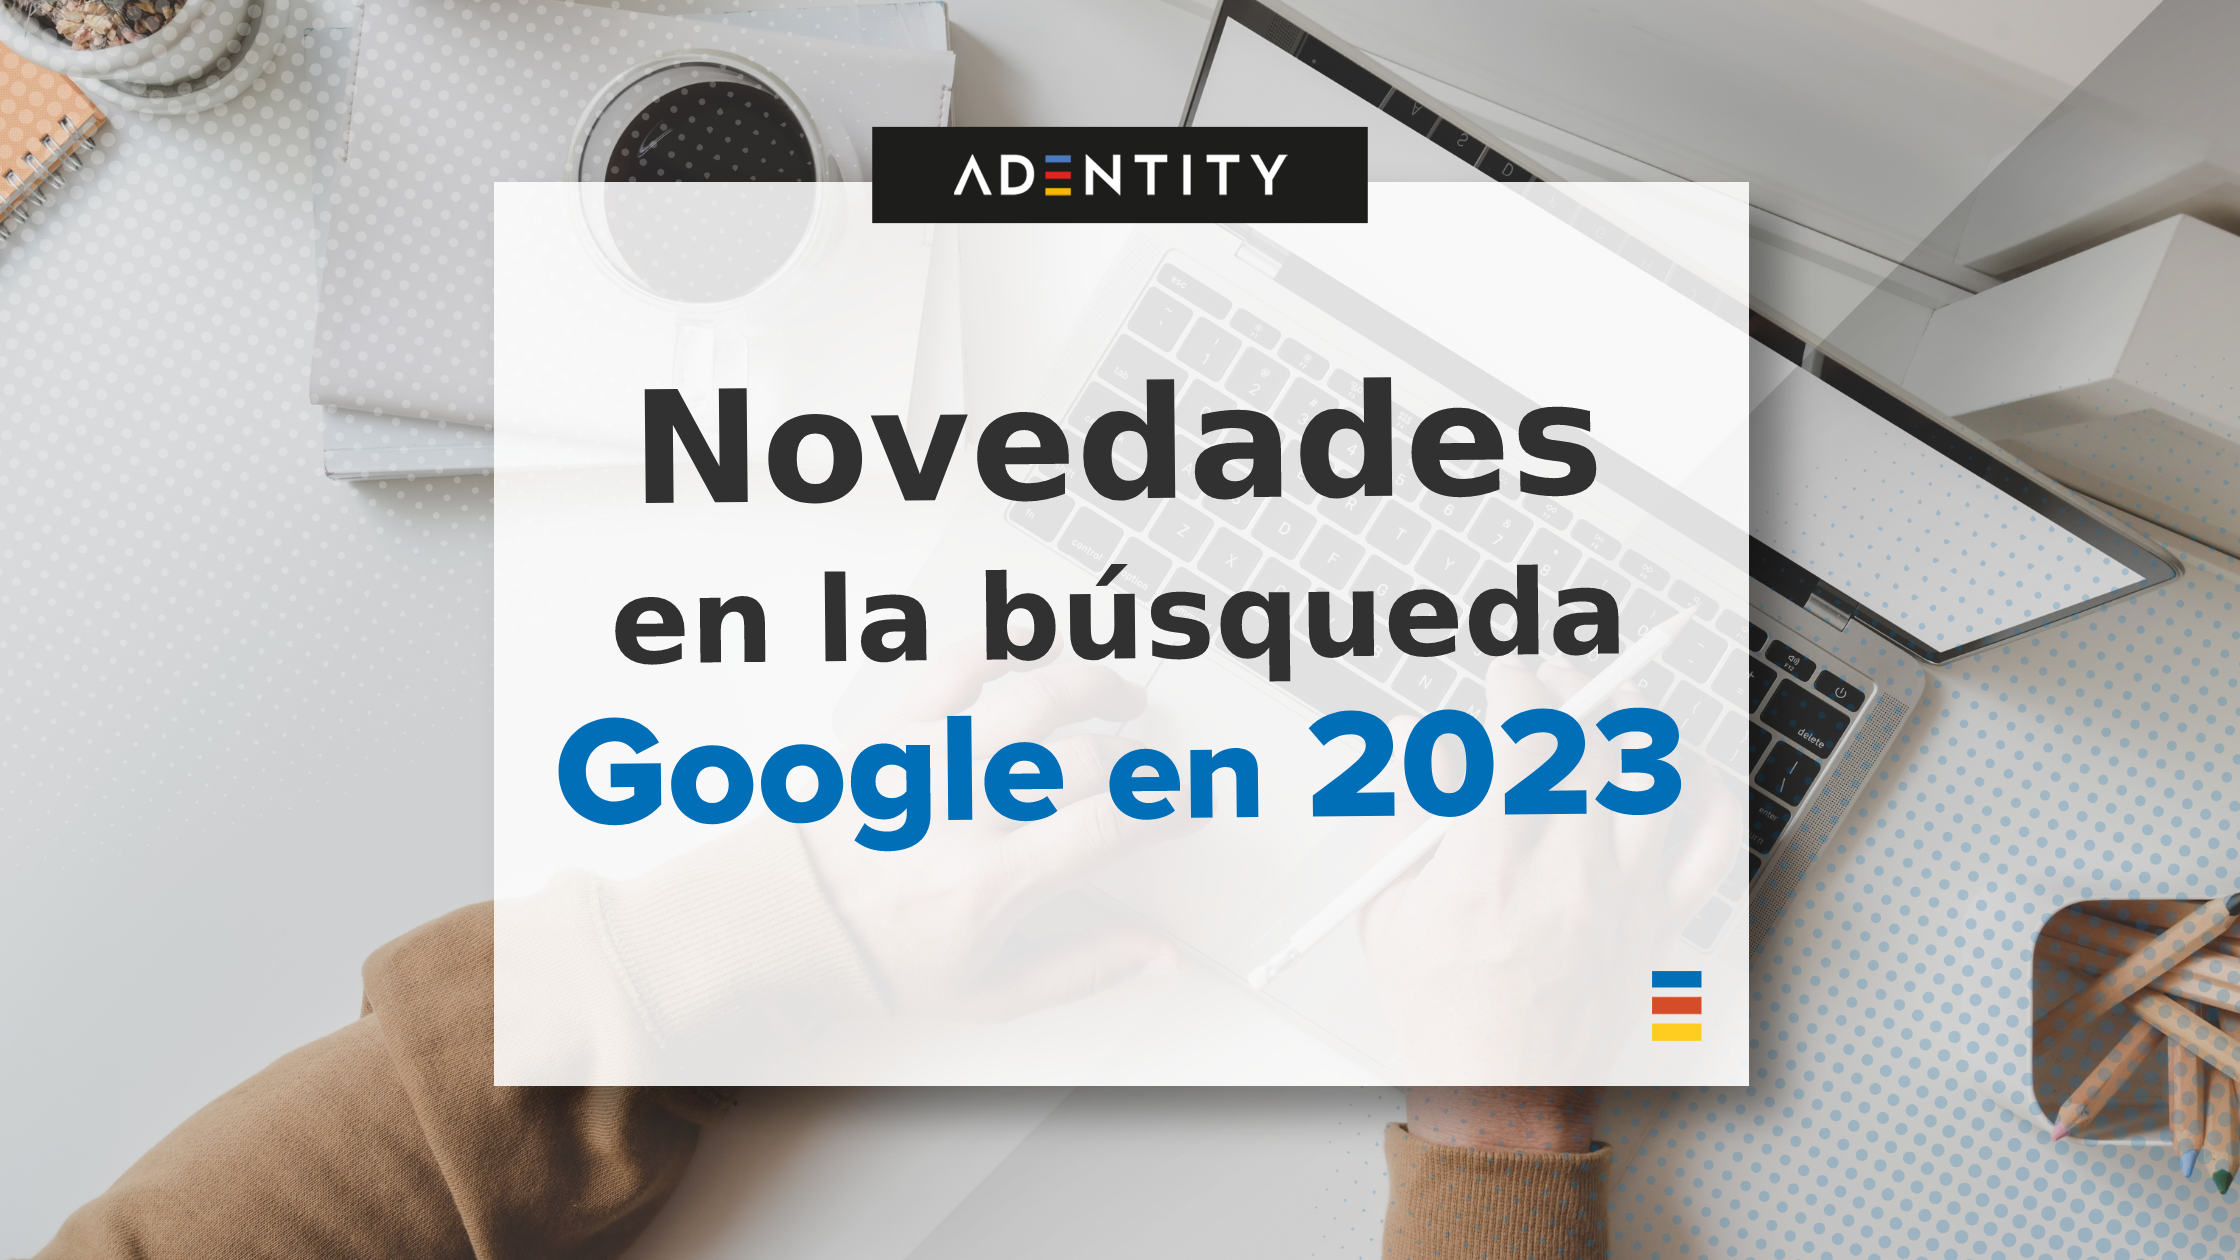 Las novedades en la búsqueda local de Google en 2023. ¿Qué nos espera?